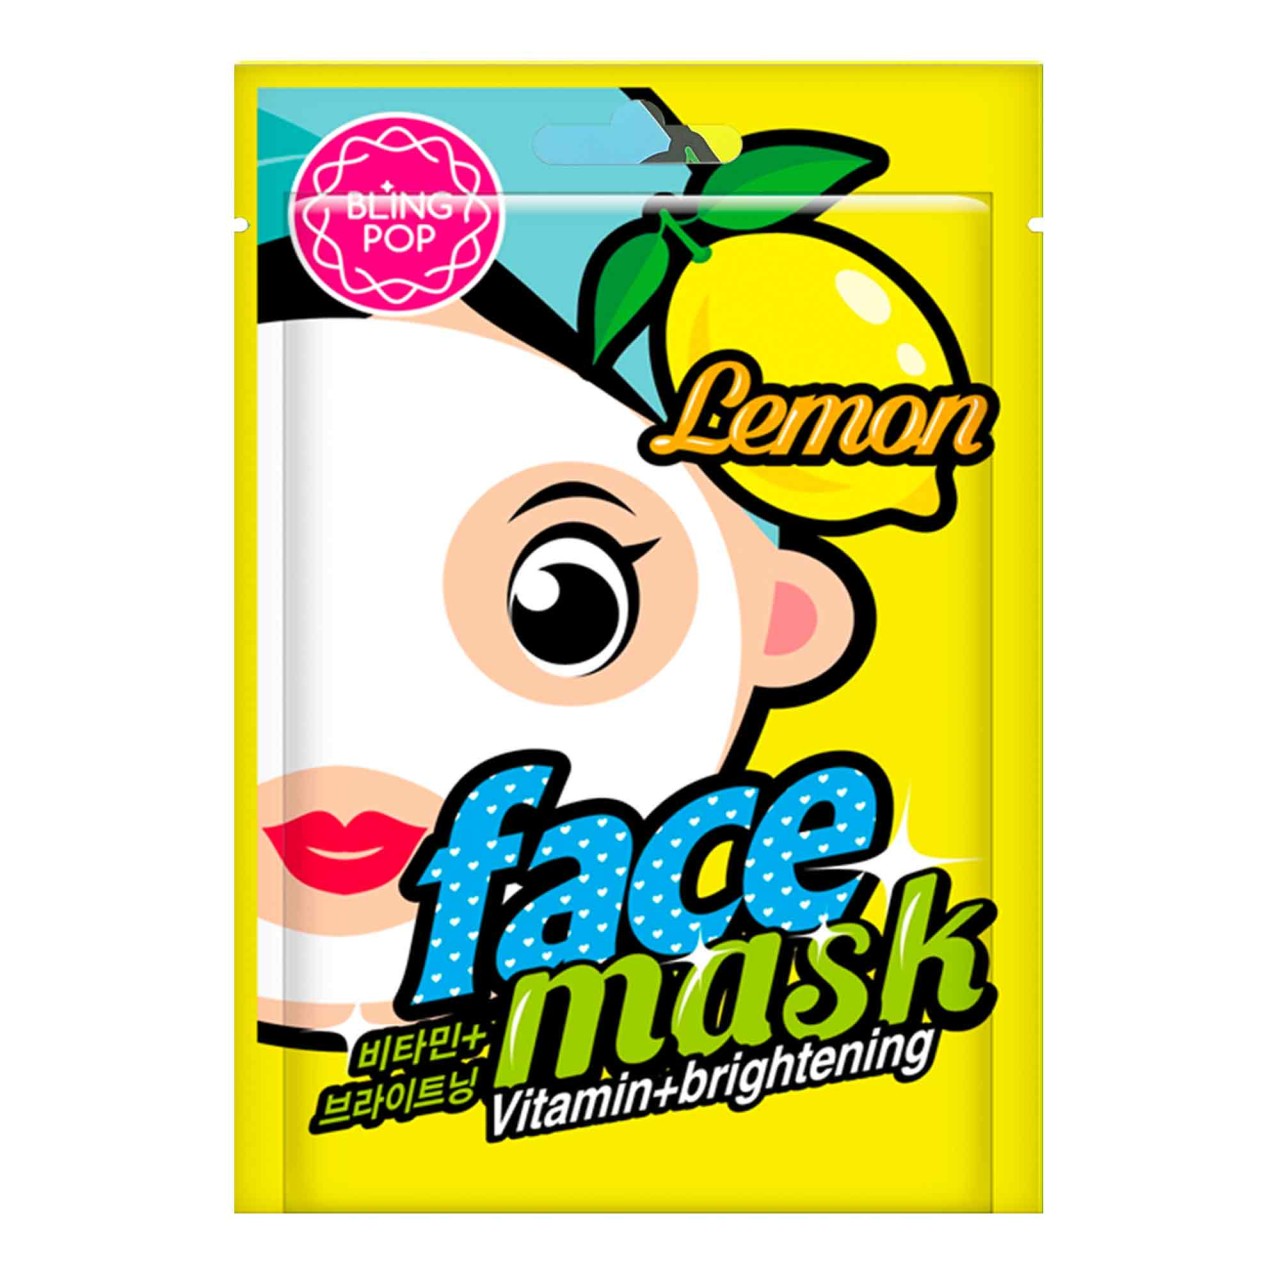 Bling Pop - Lemon Vitamin Face Mask - 